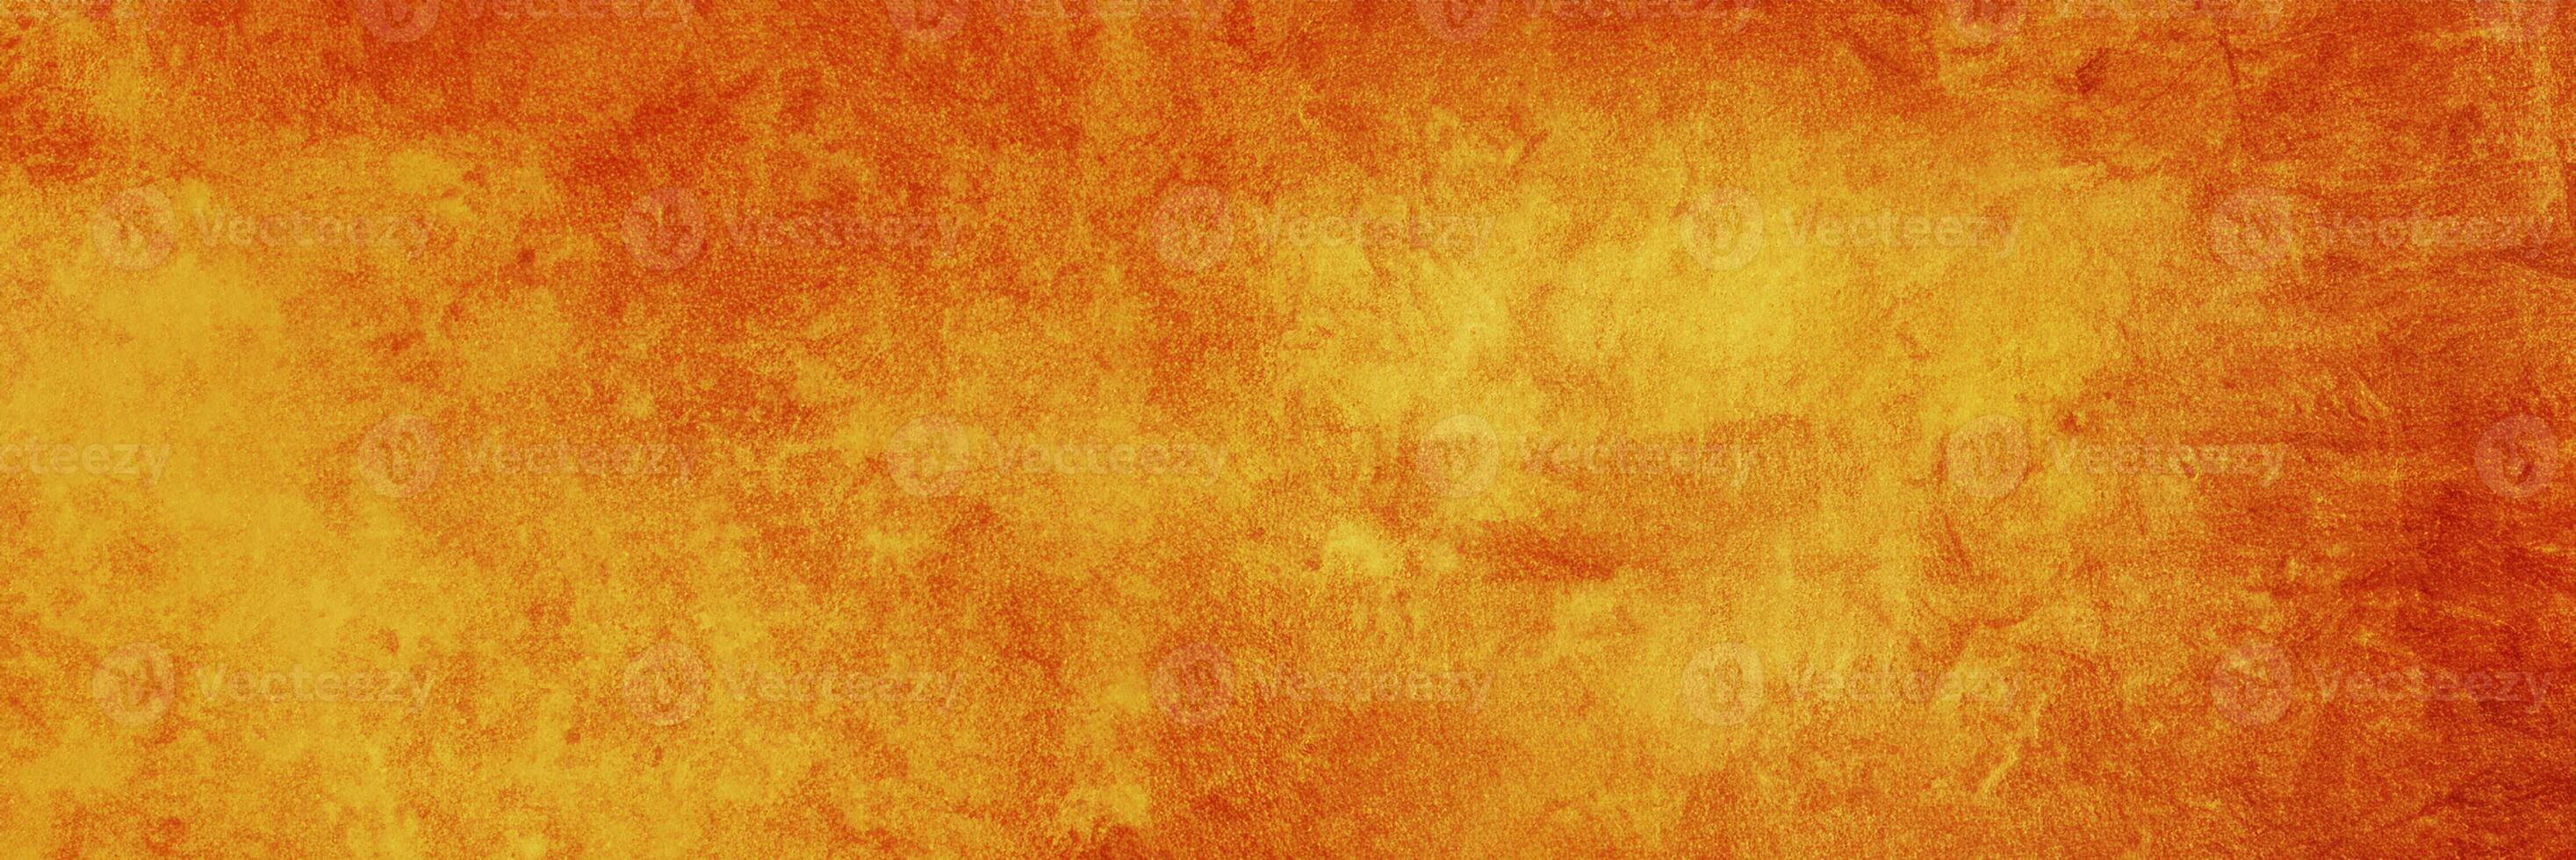 dark orange texture cement background photo